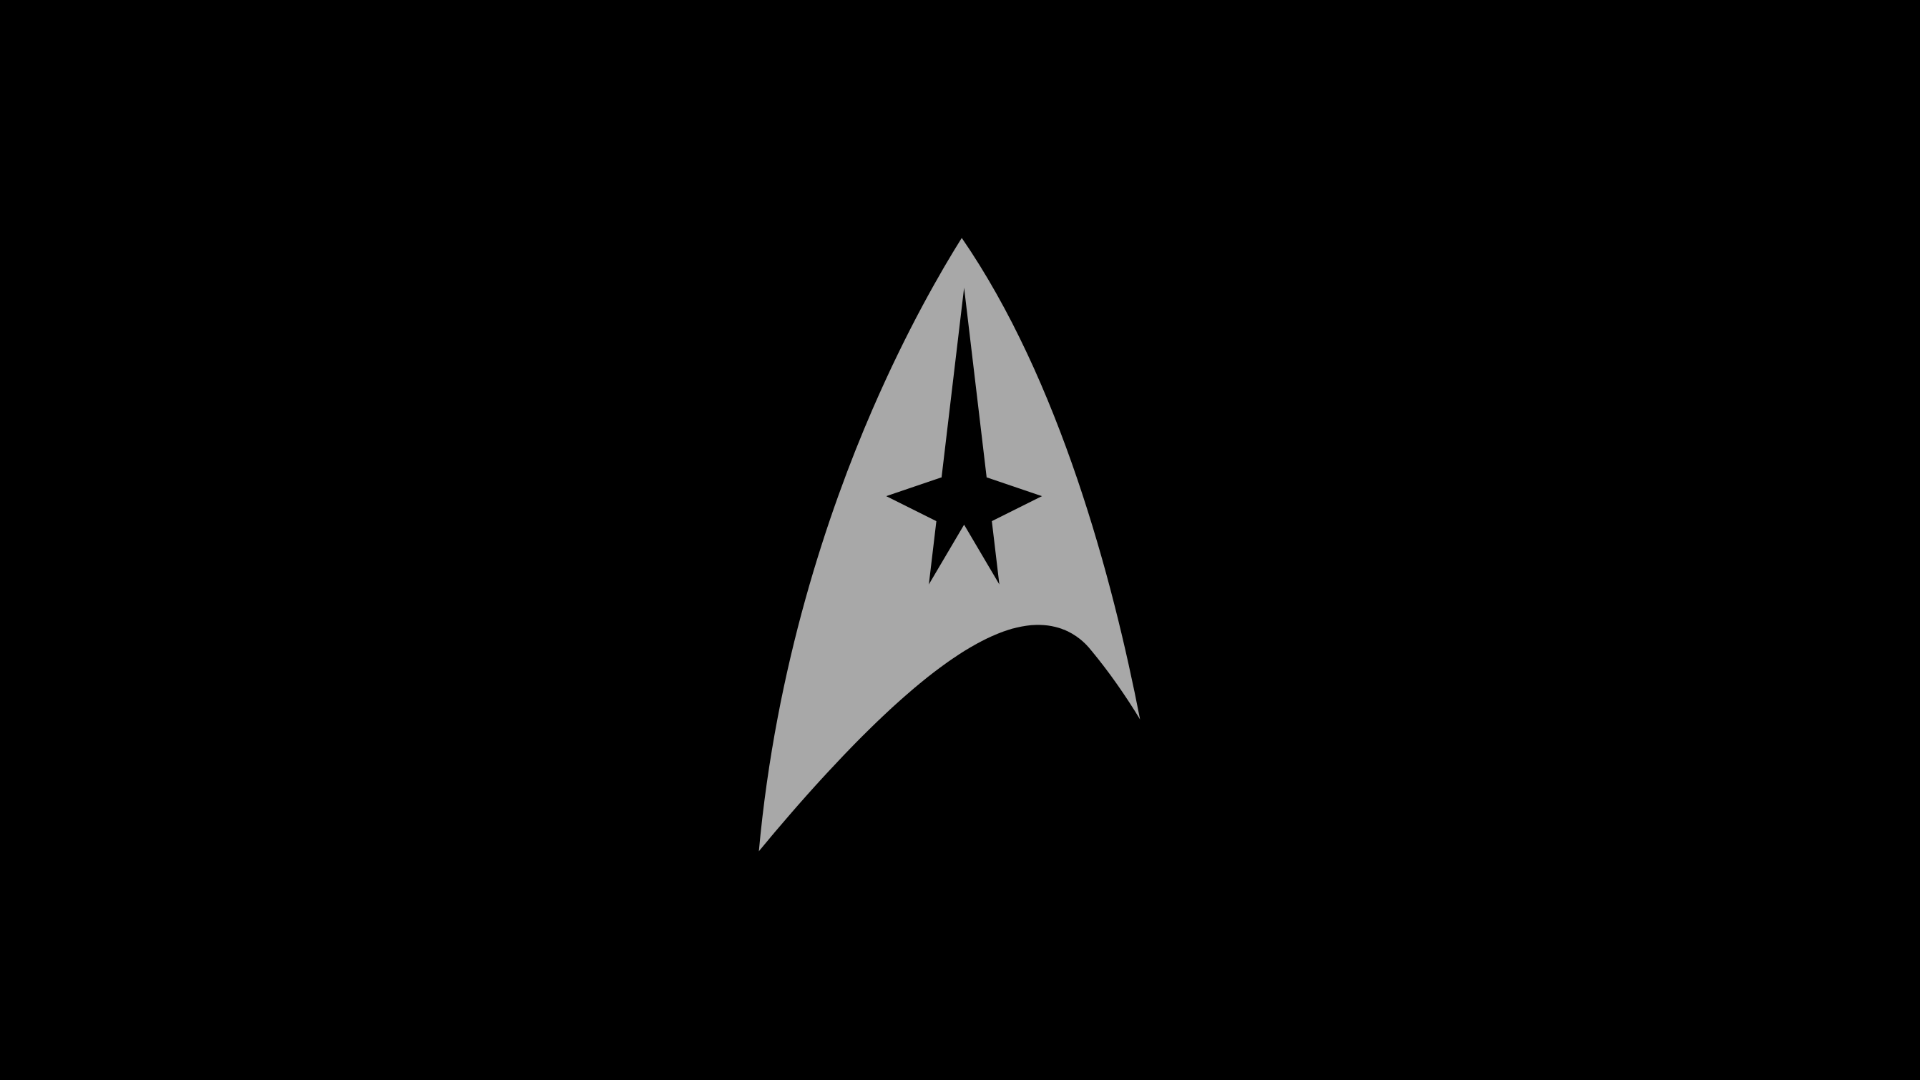 🔥 Download Steam Workshop Star Trek Wallpaper by @hsanchez | Trek ...